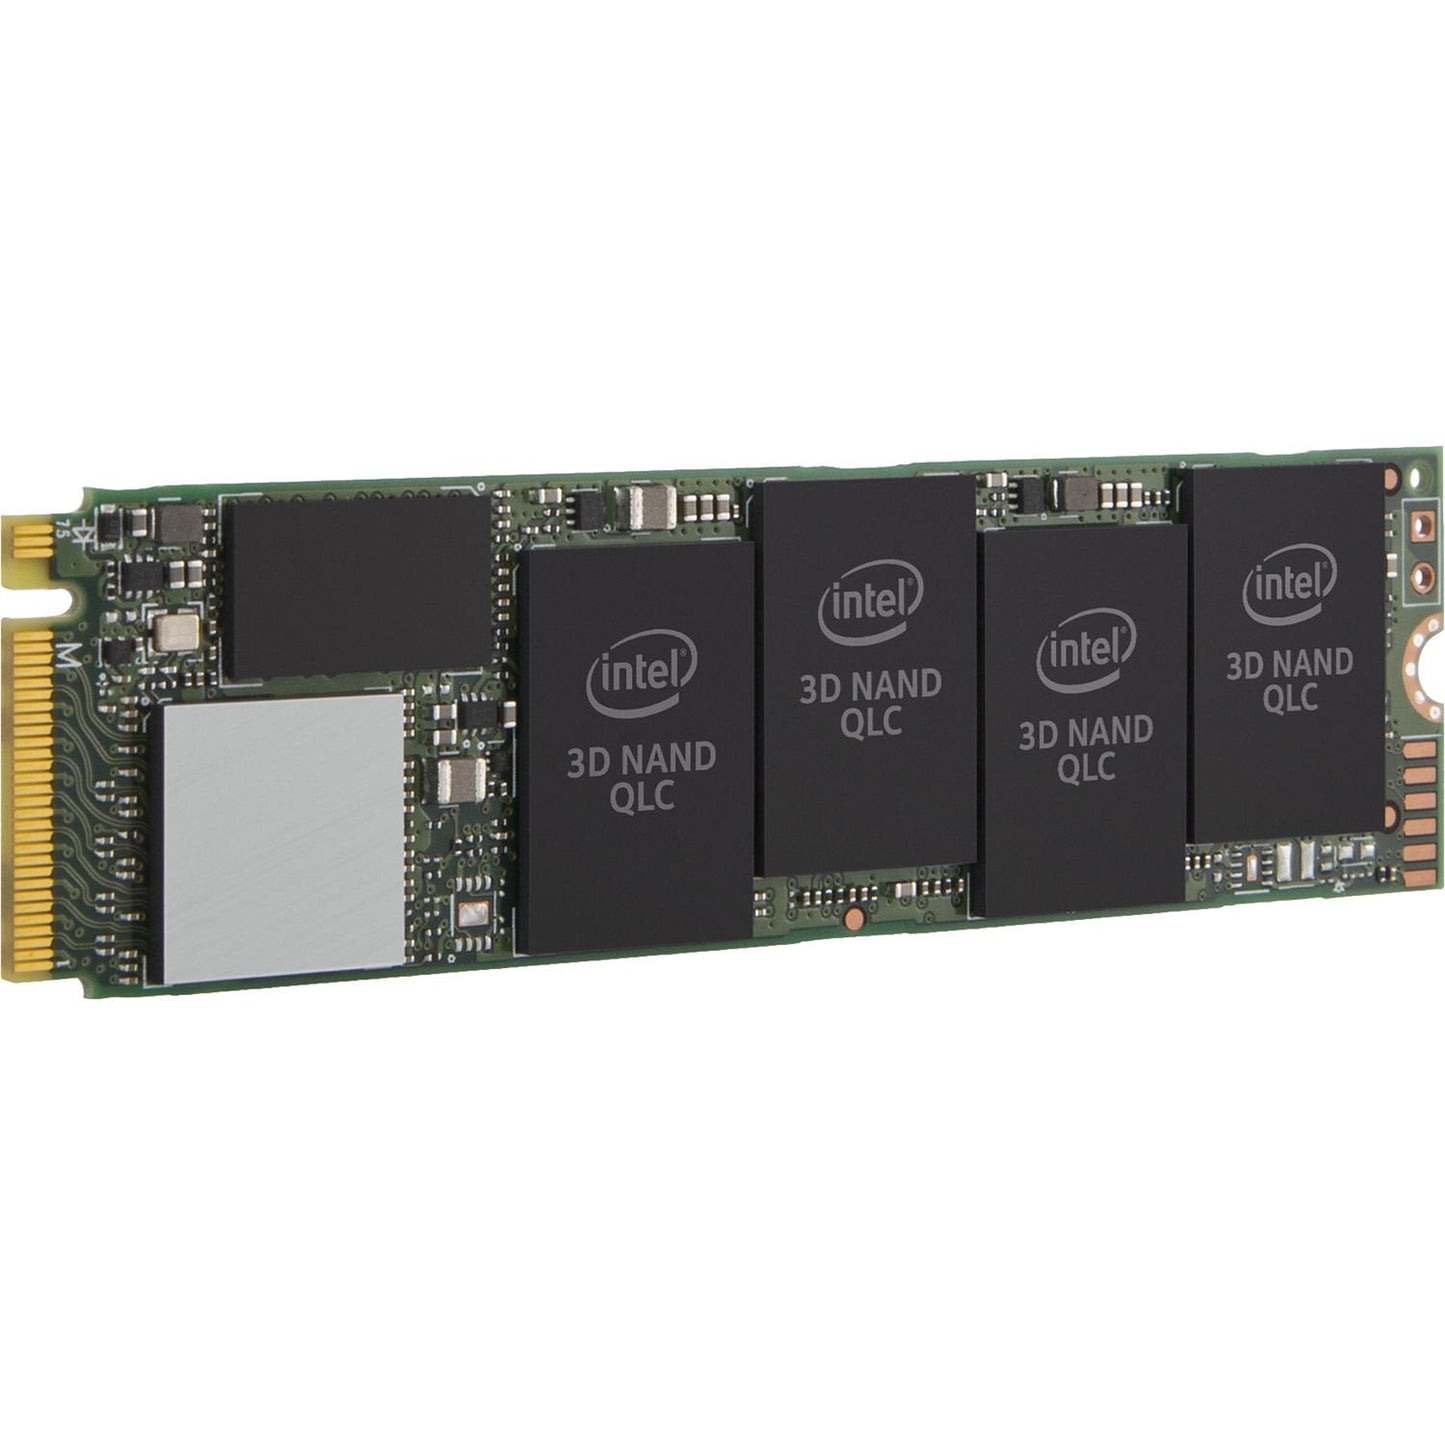 Intel 660p 1TB m.2 2280 PCIe Encrypted Internal SSD - SSDPEKNW010T8X1